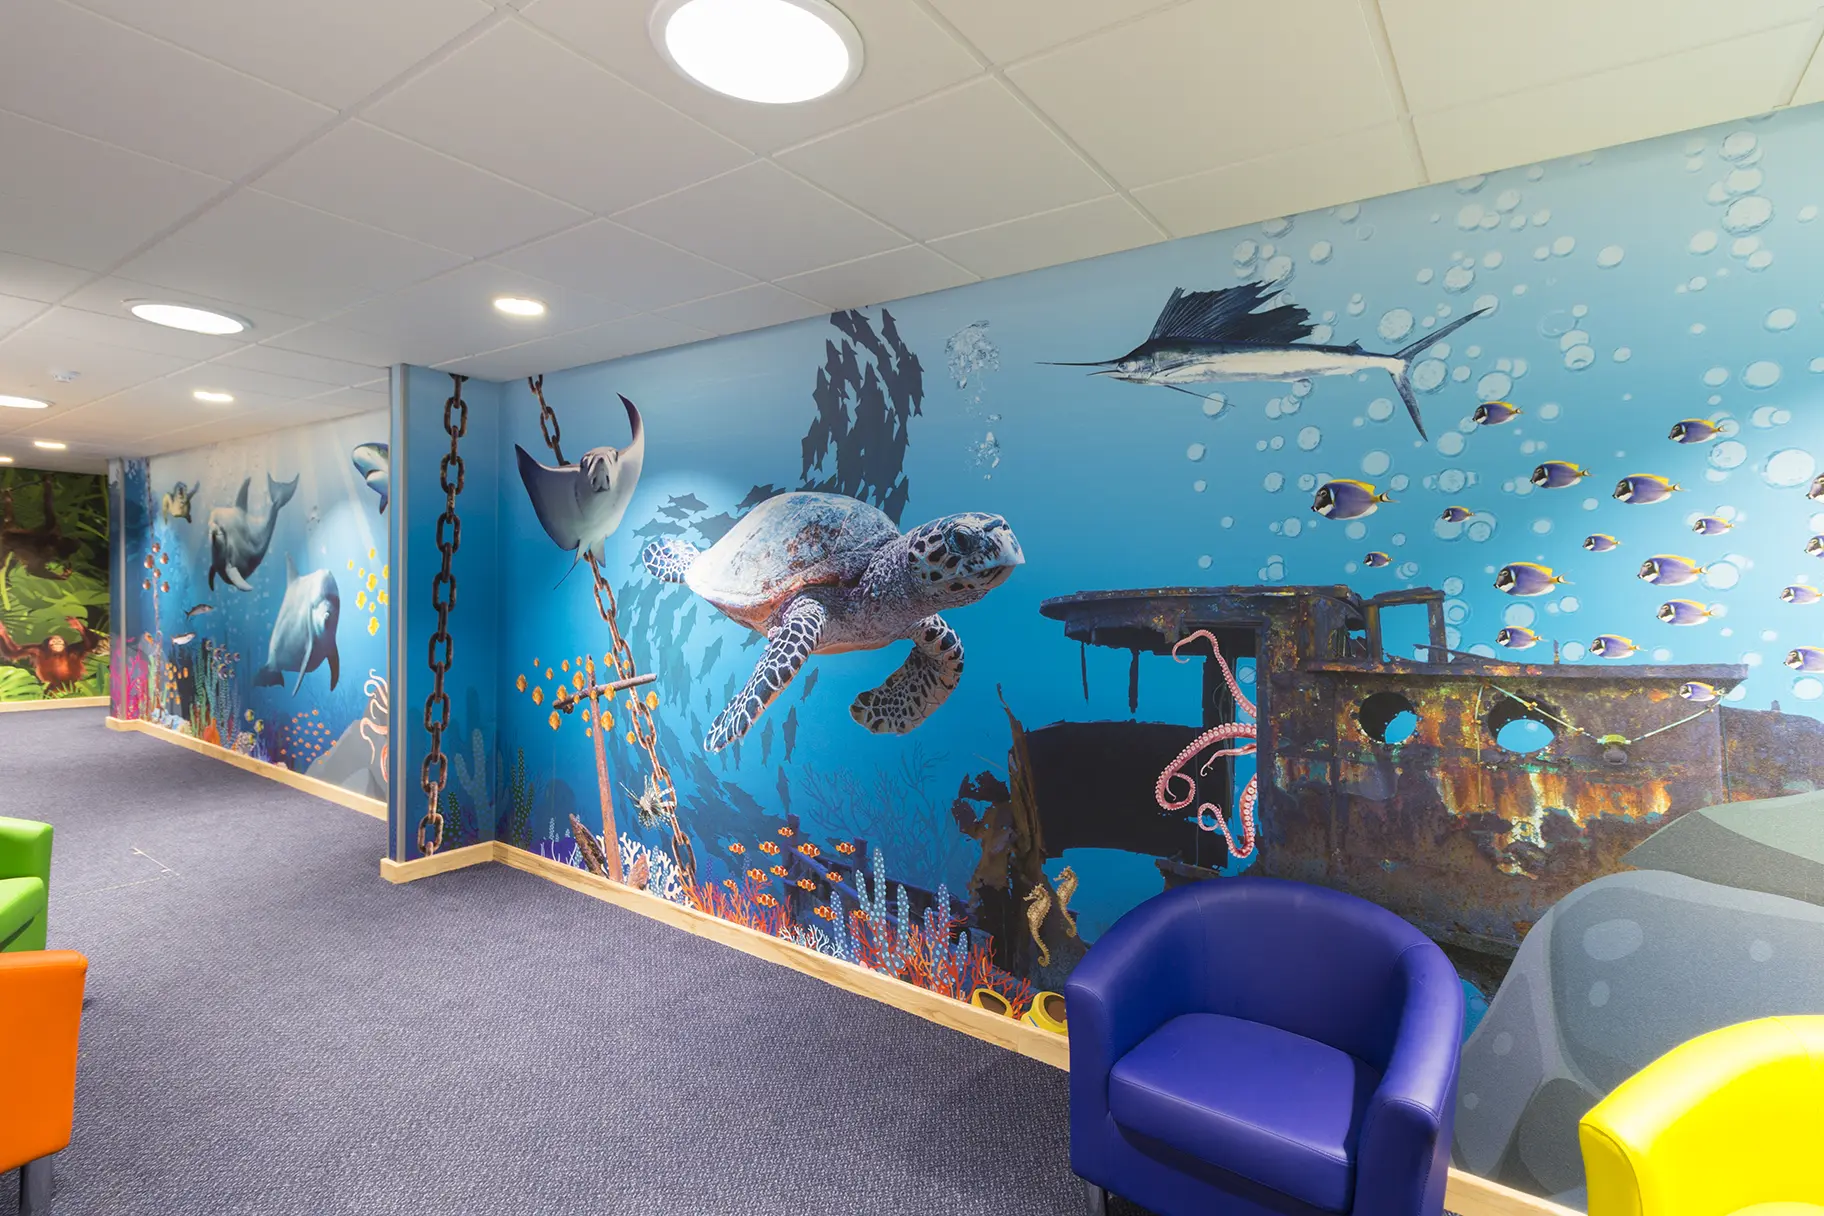 Lee Chapel Schools immersive underwater themed corridor wall art